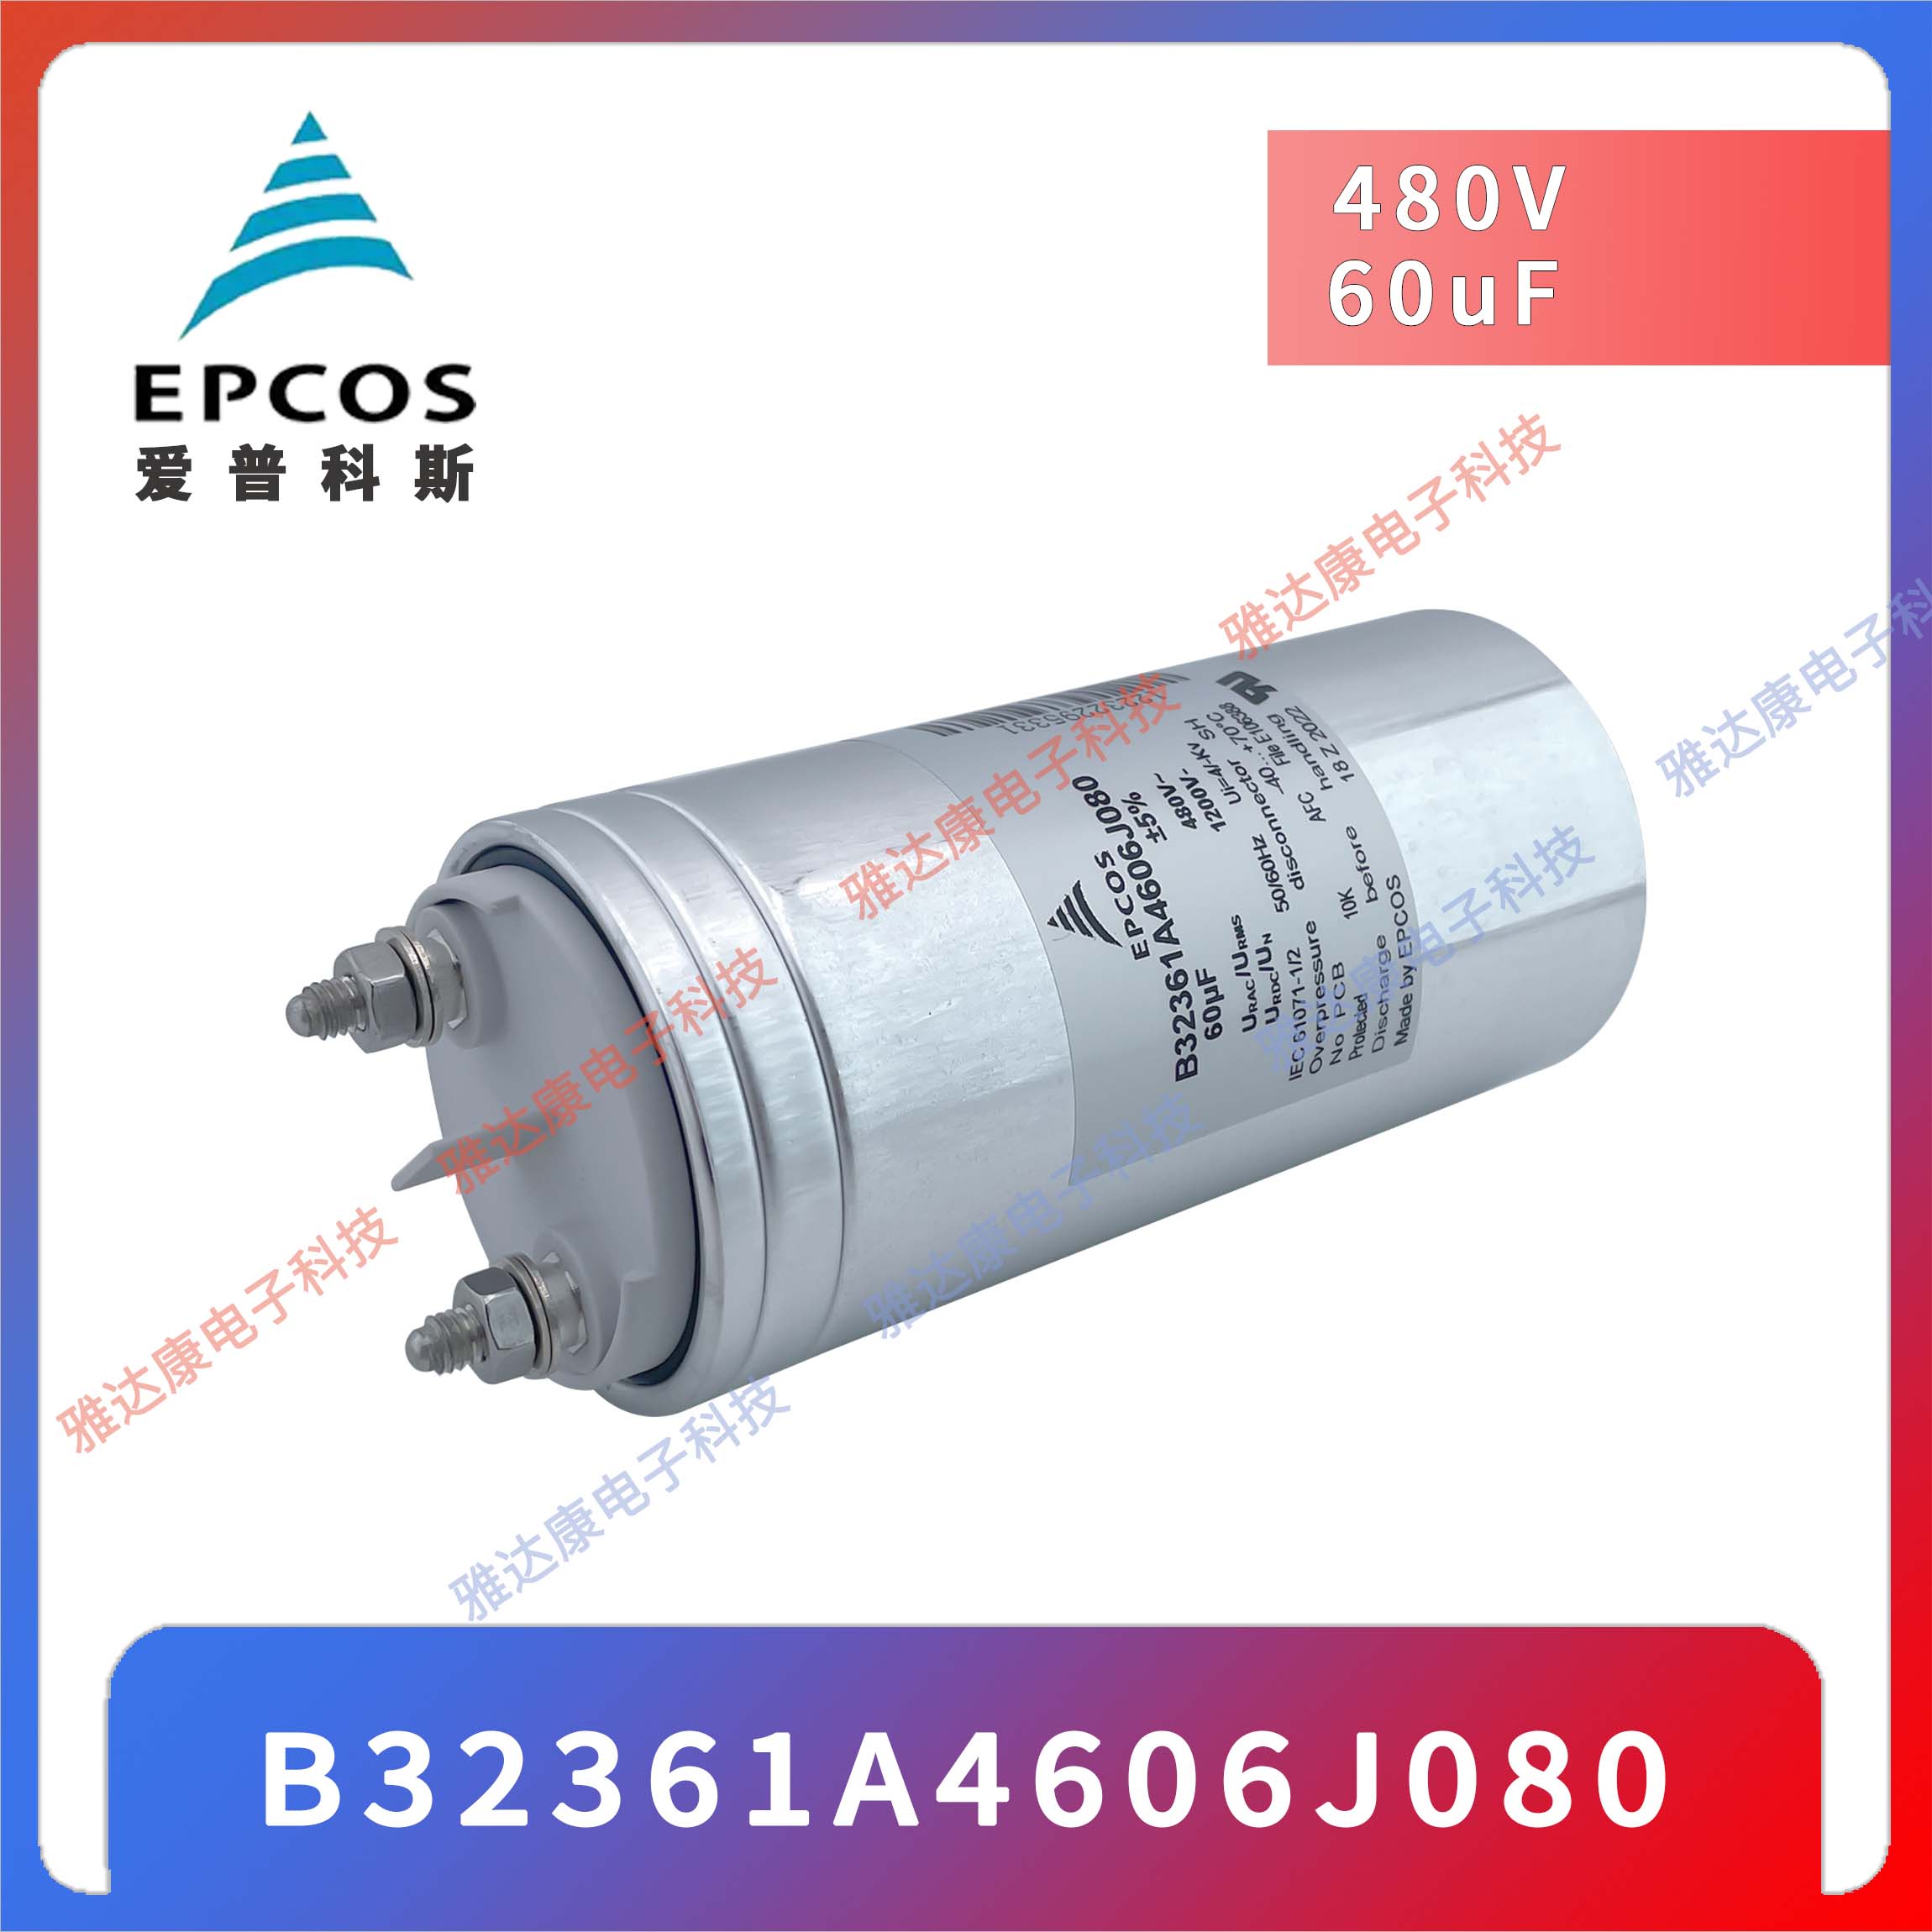 EPCOS电容器薄膜电容 B32377A4306J080 480V680V  3×30uF 75 × 200图片